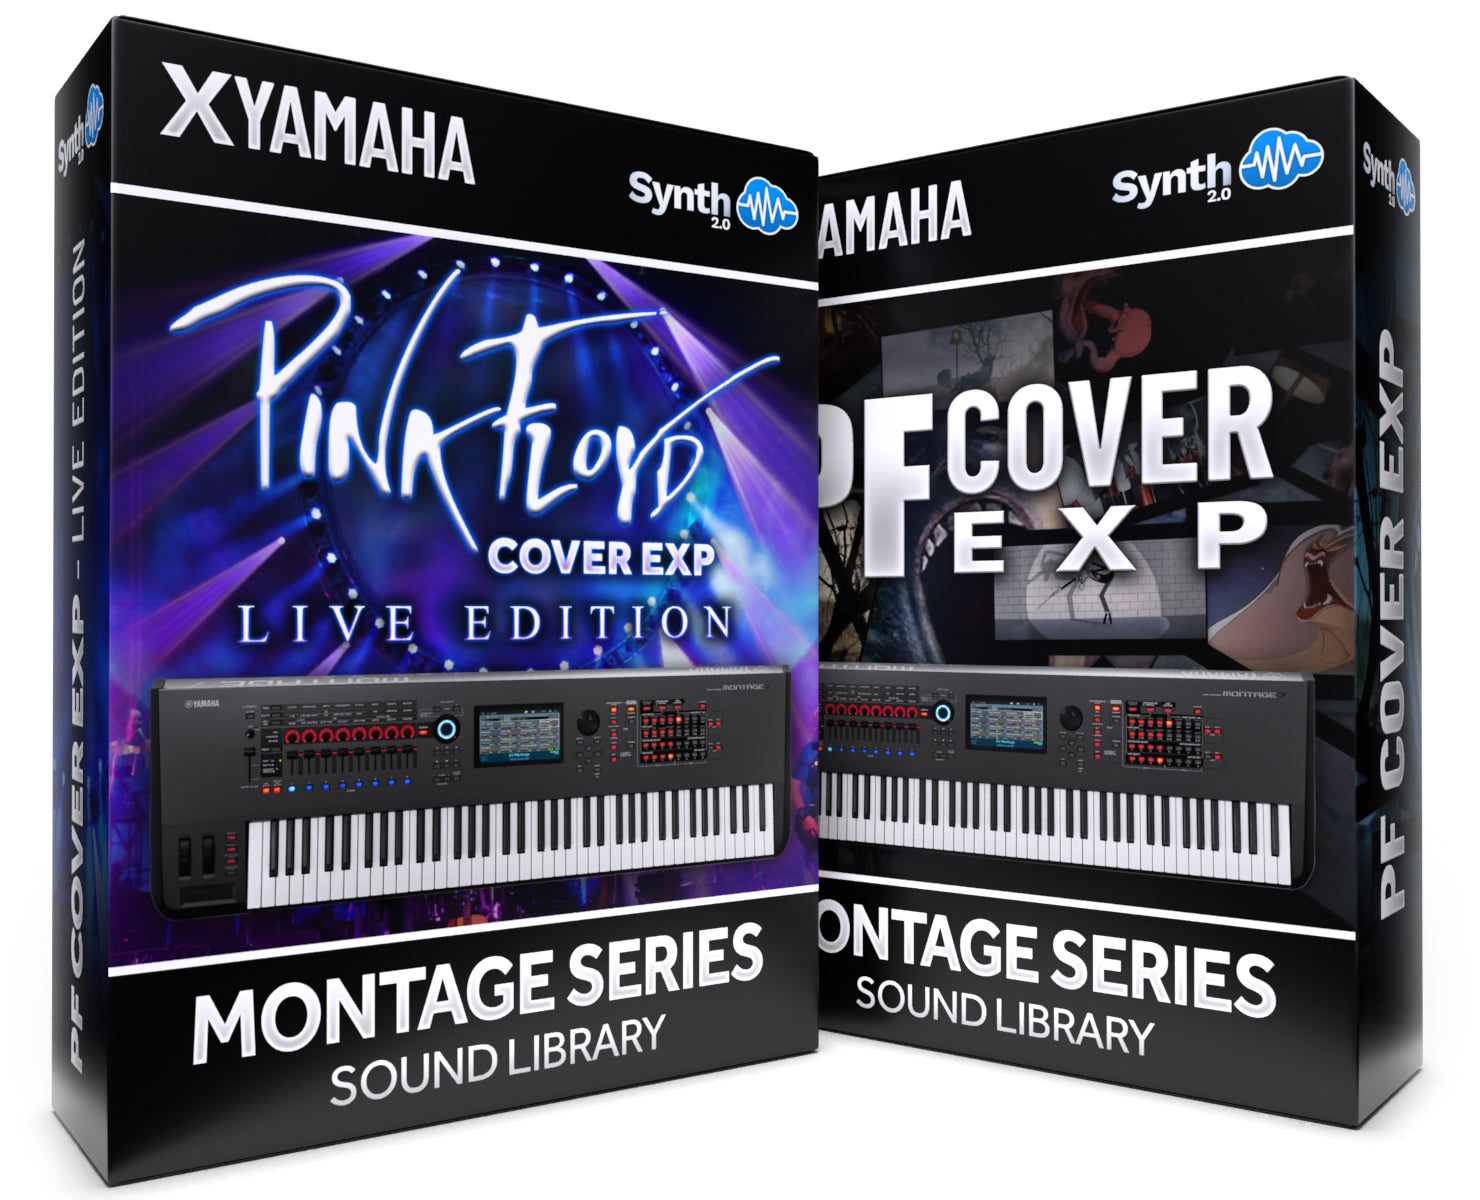 FPL012 - ( Bundle ) - PF Cover EXP + Live Edition - Yamaha MONTAGE / M